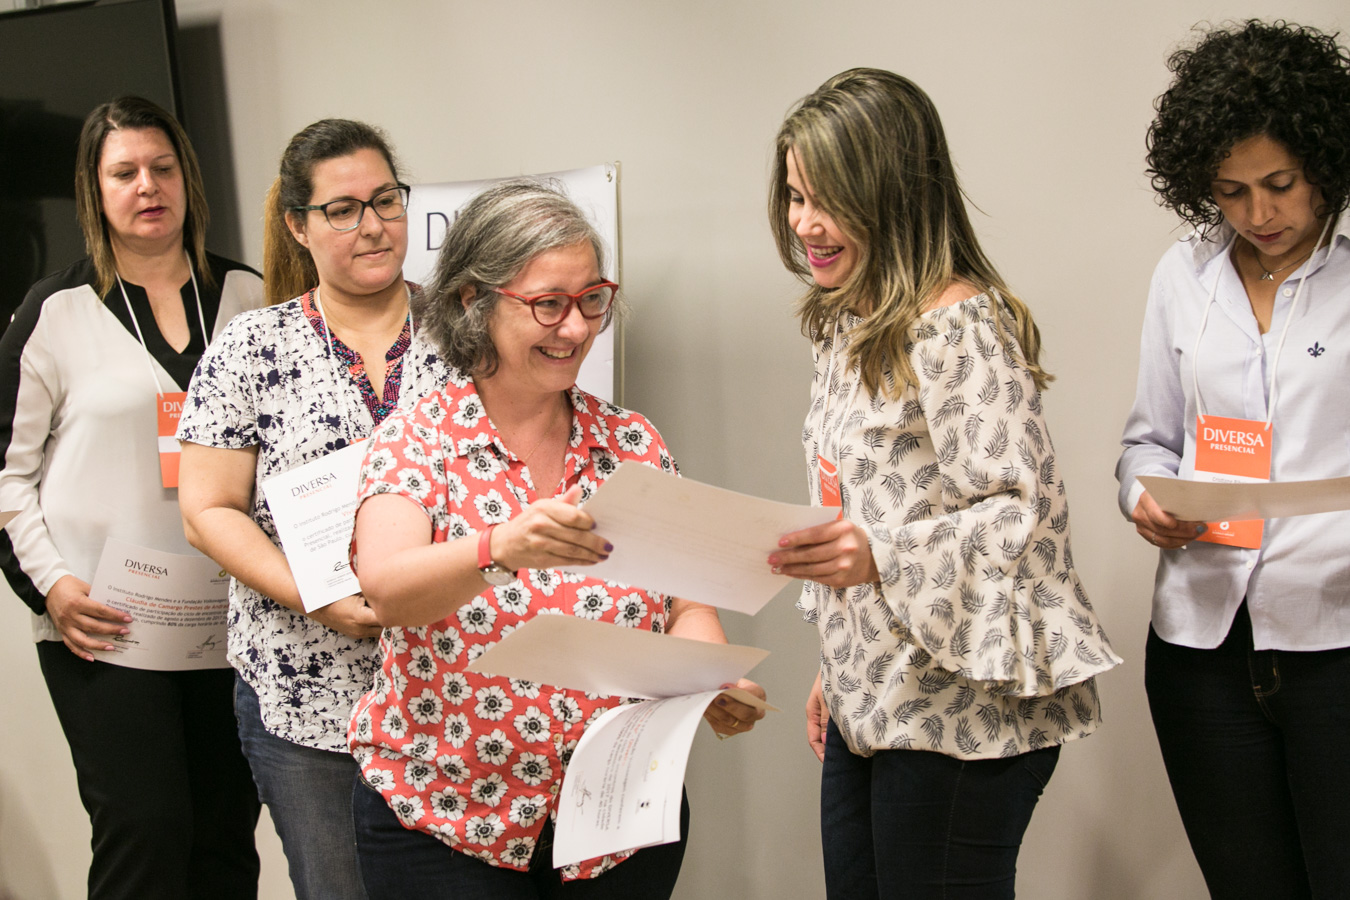 No centro da imagem, uma mulher sorridente entrega um certificado a uma das participantes do DIVERSA Presencial 2017. Ao lado delas, outras mulheres seguram seus certificados.